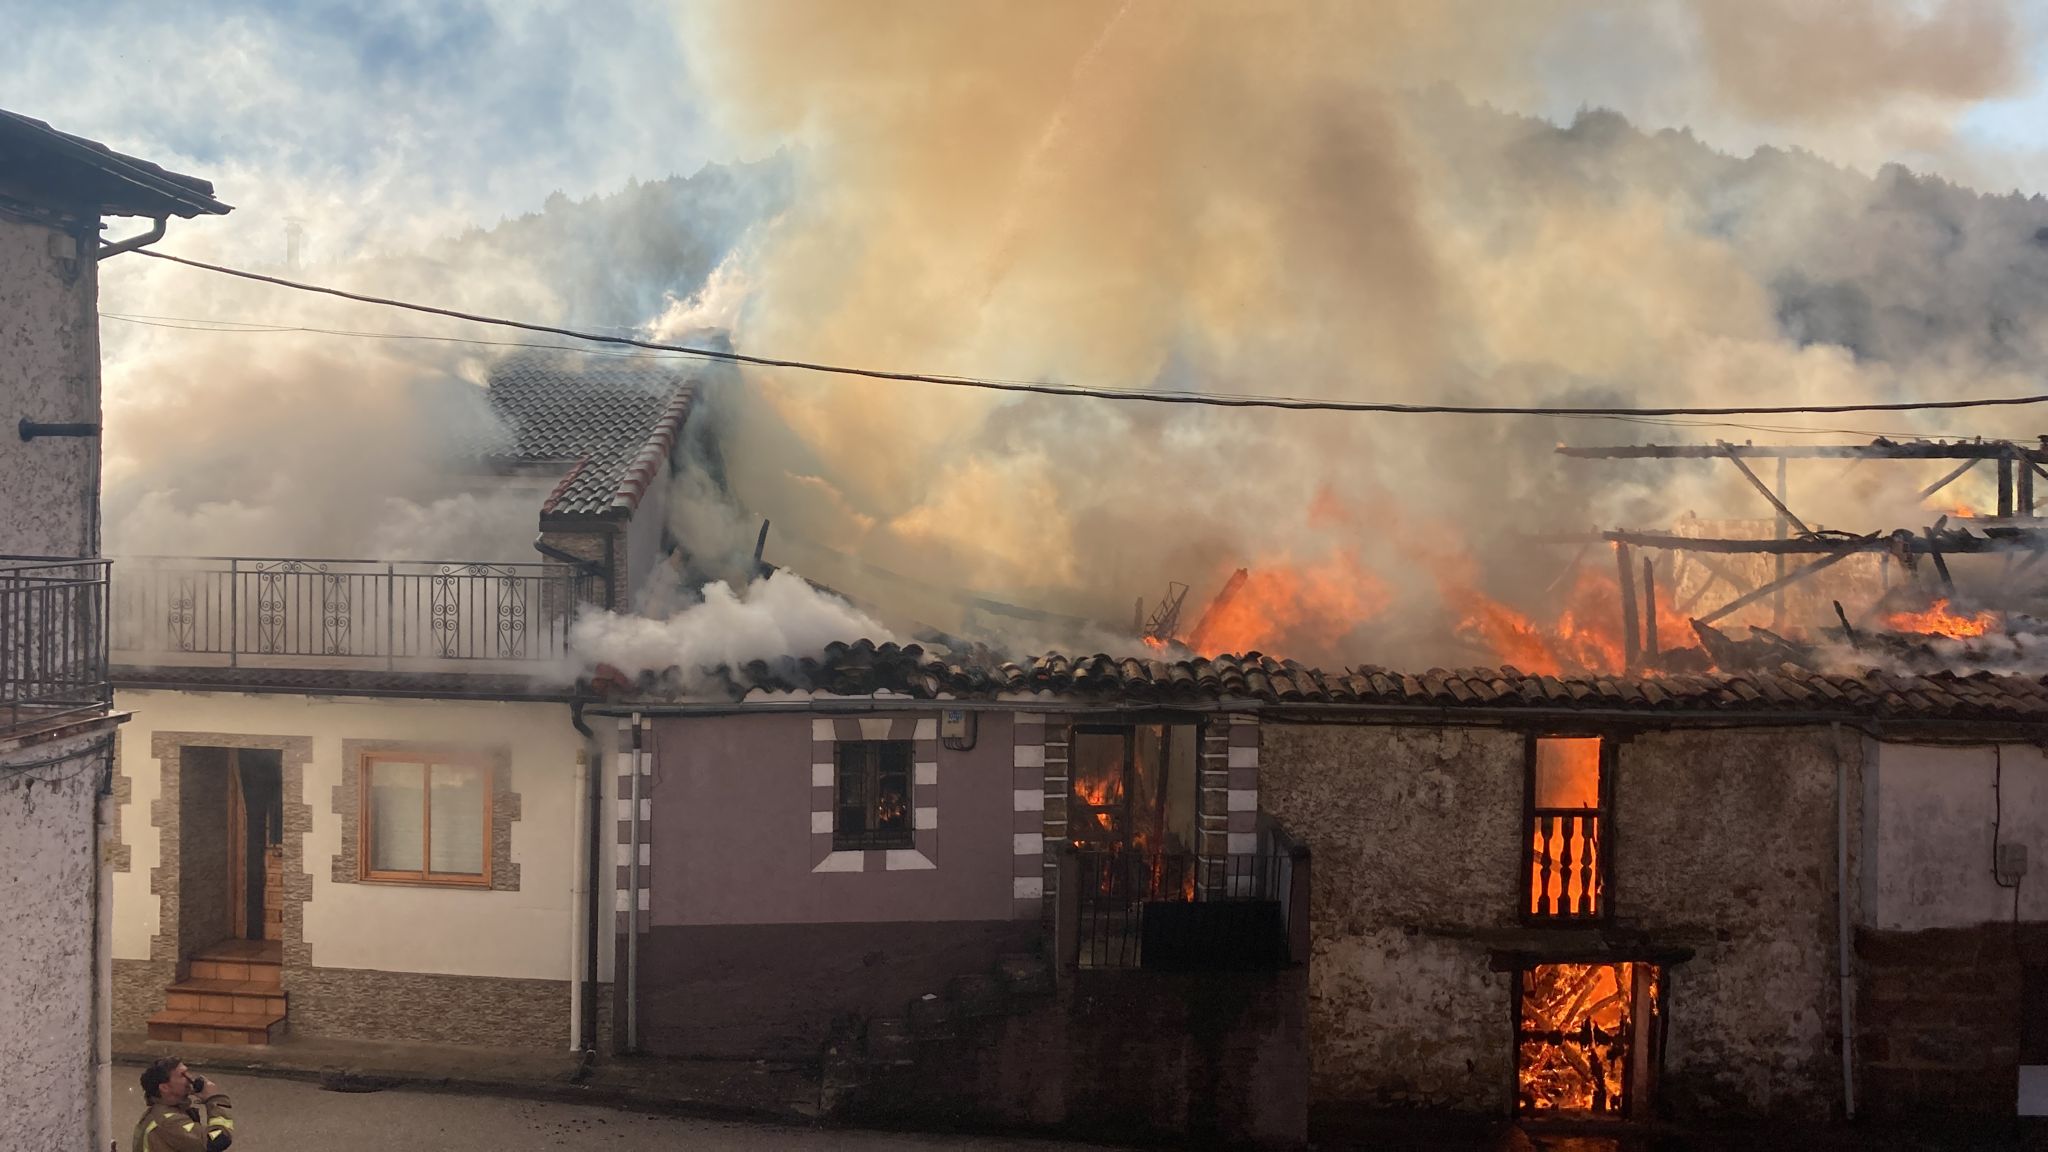 El fuego calcina cuatro casas contiguas en el centro de Cabrejas del Pinar